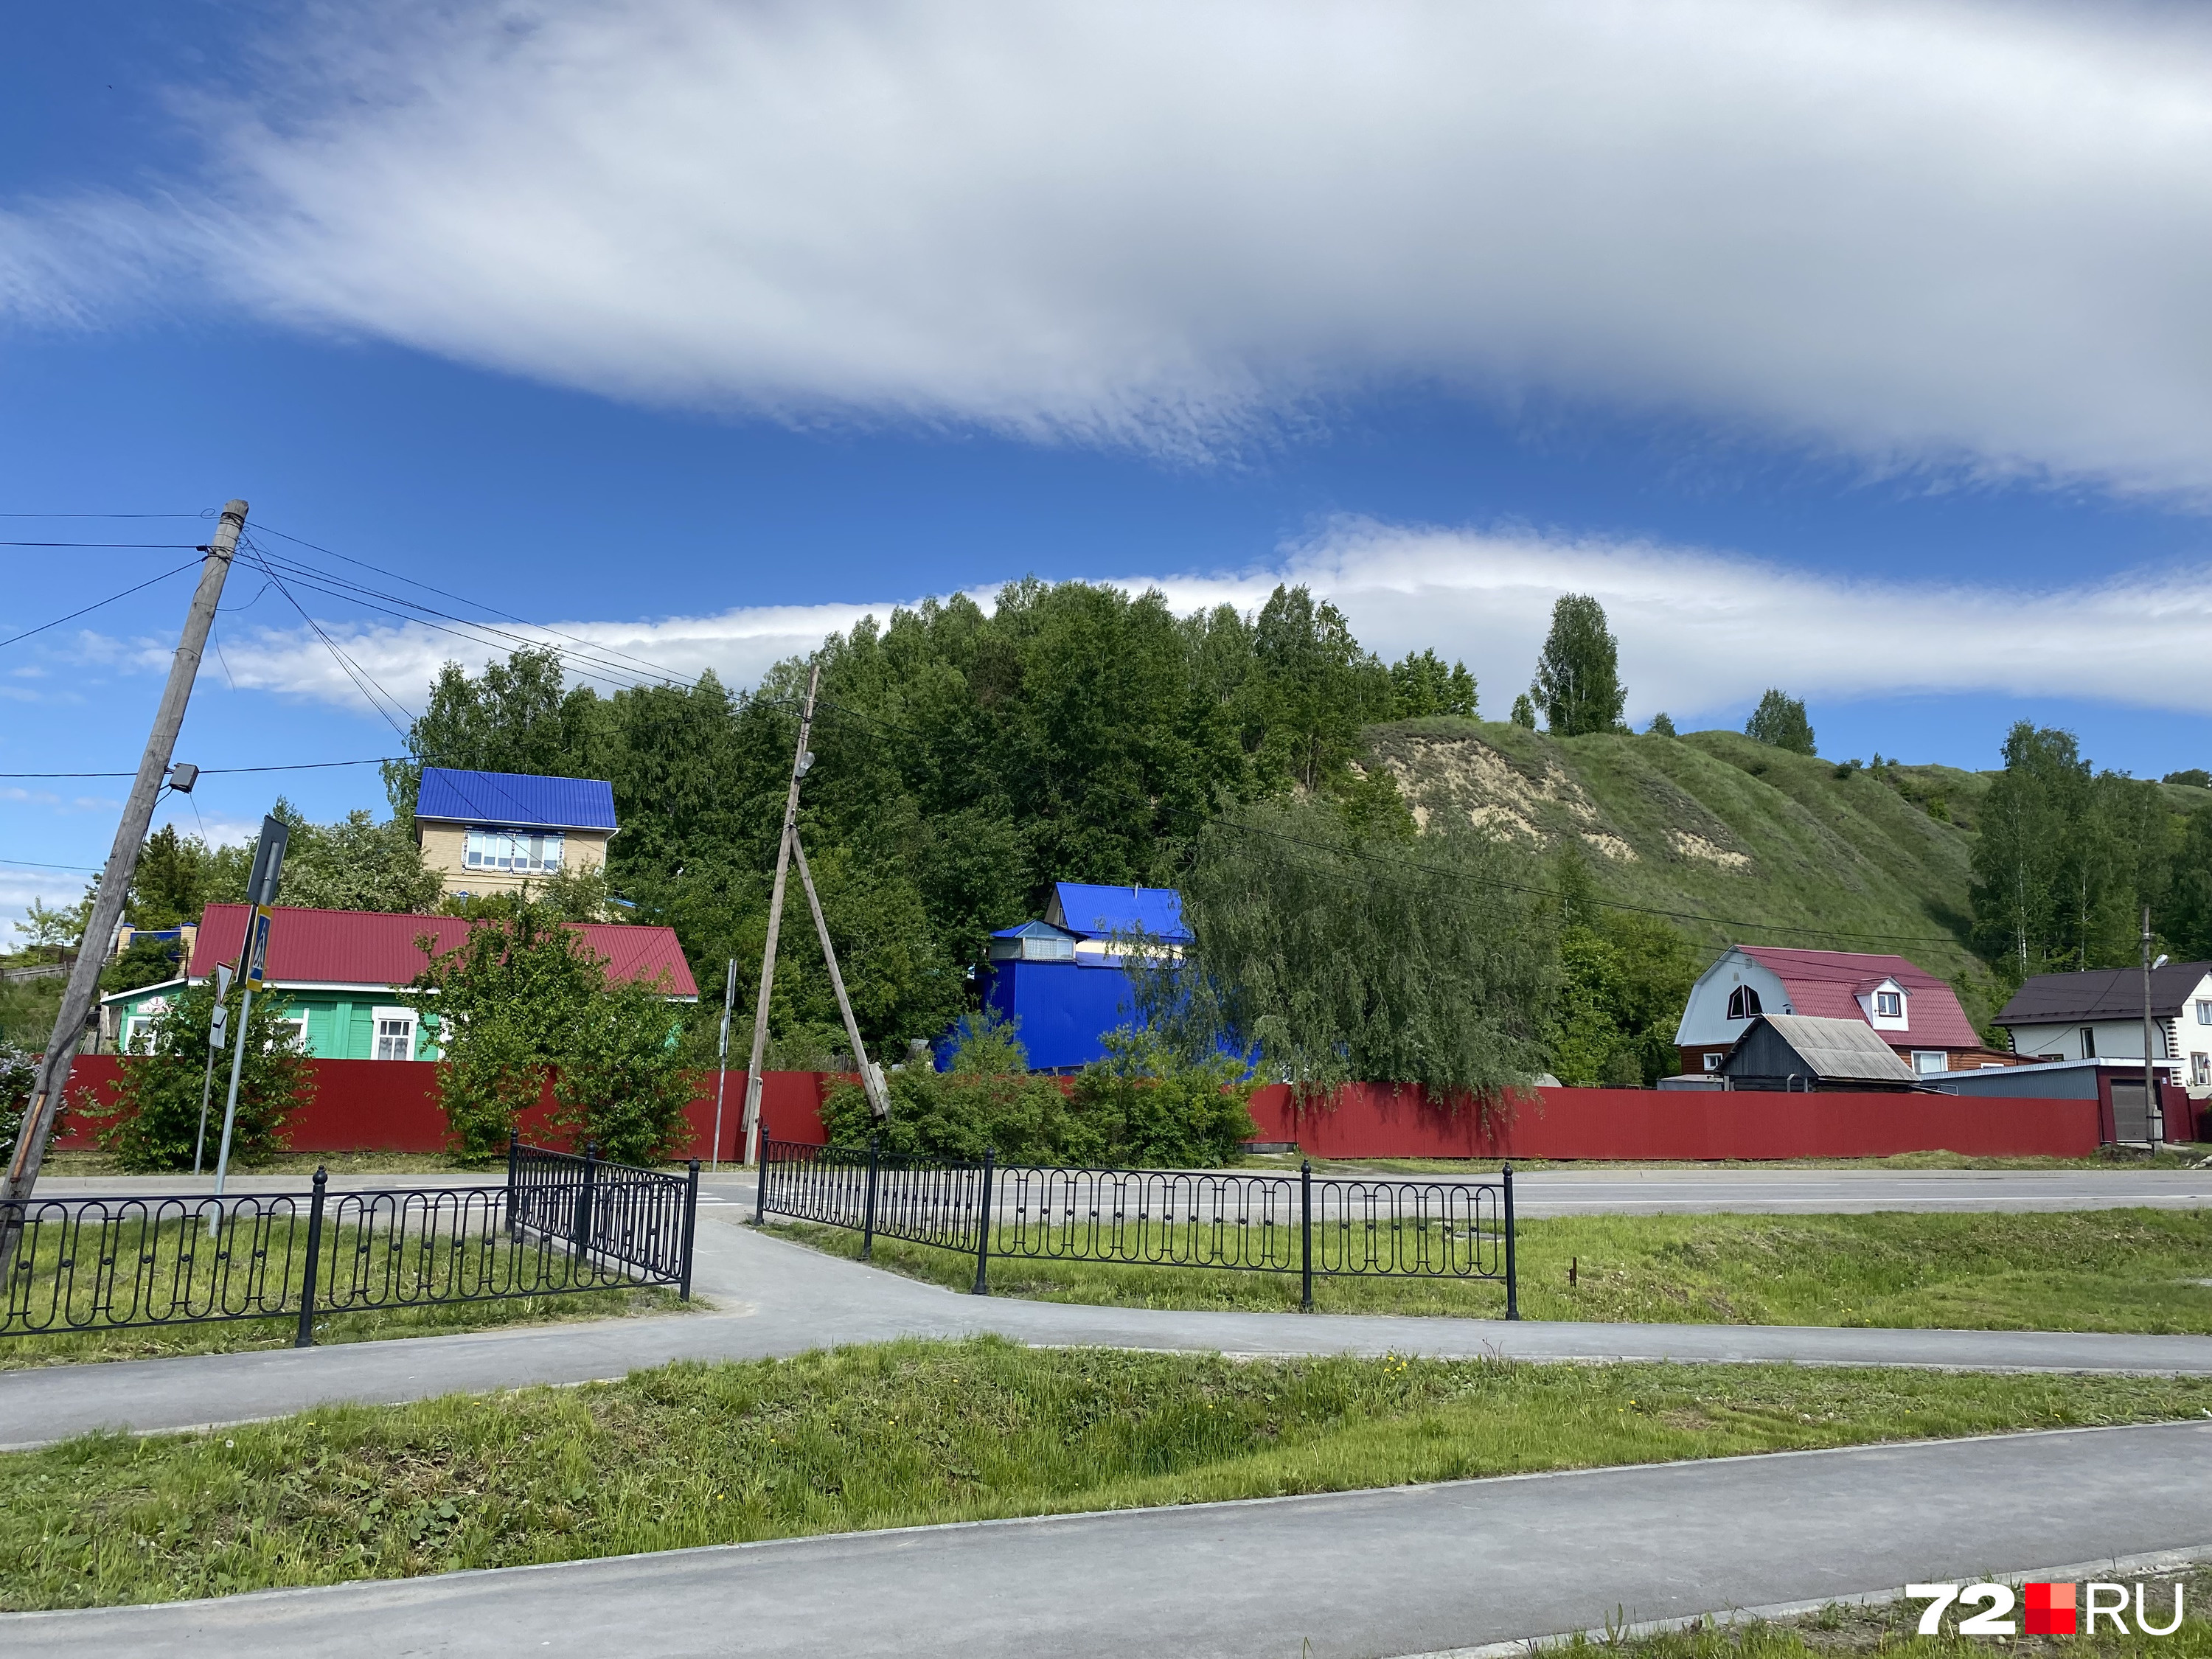 Местами Тобольск напоминает небольшую уютную деревню: поют птицы, пахнет свежескошенной травой